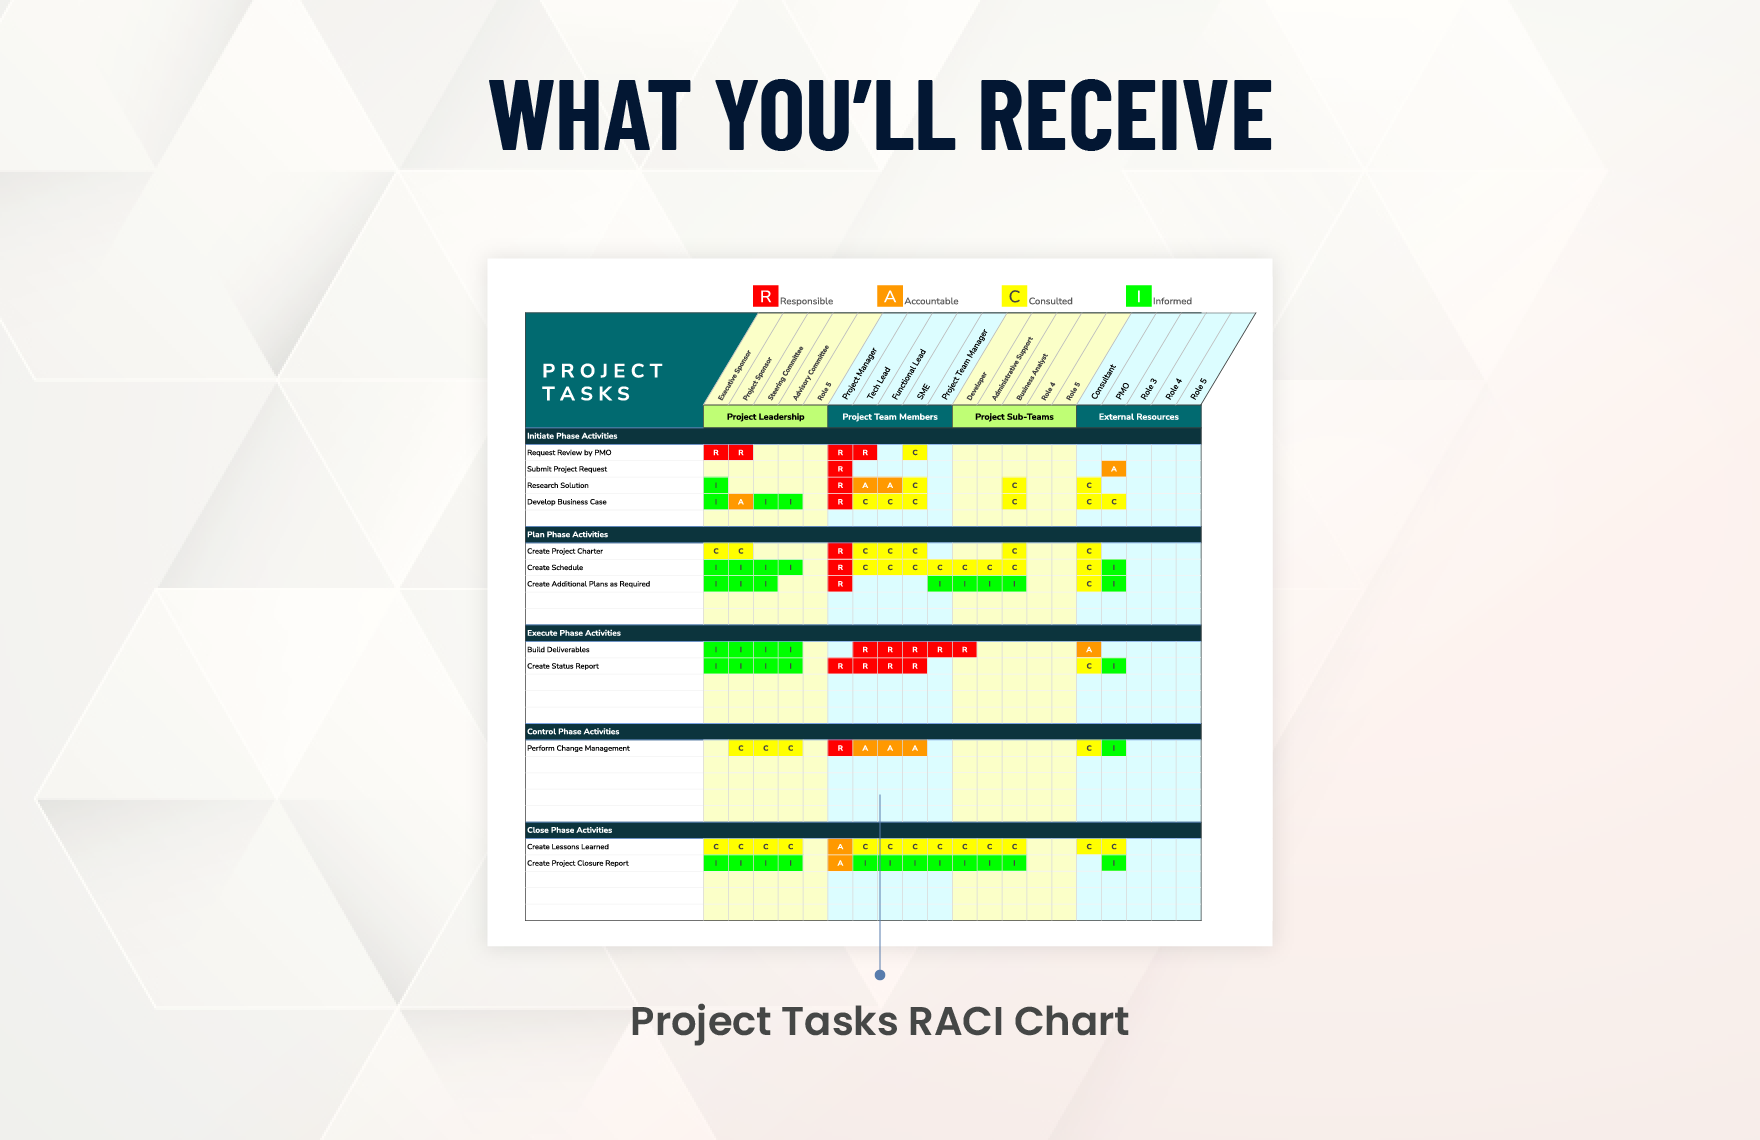 Task RACI Chart Template